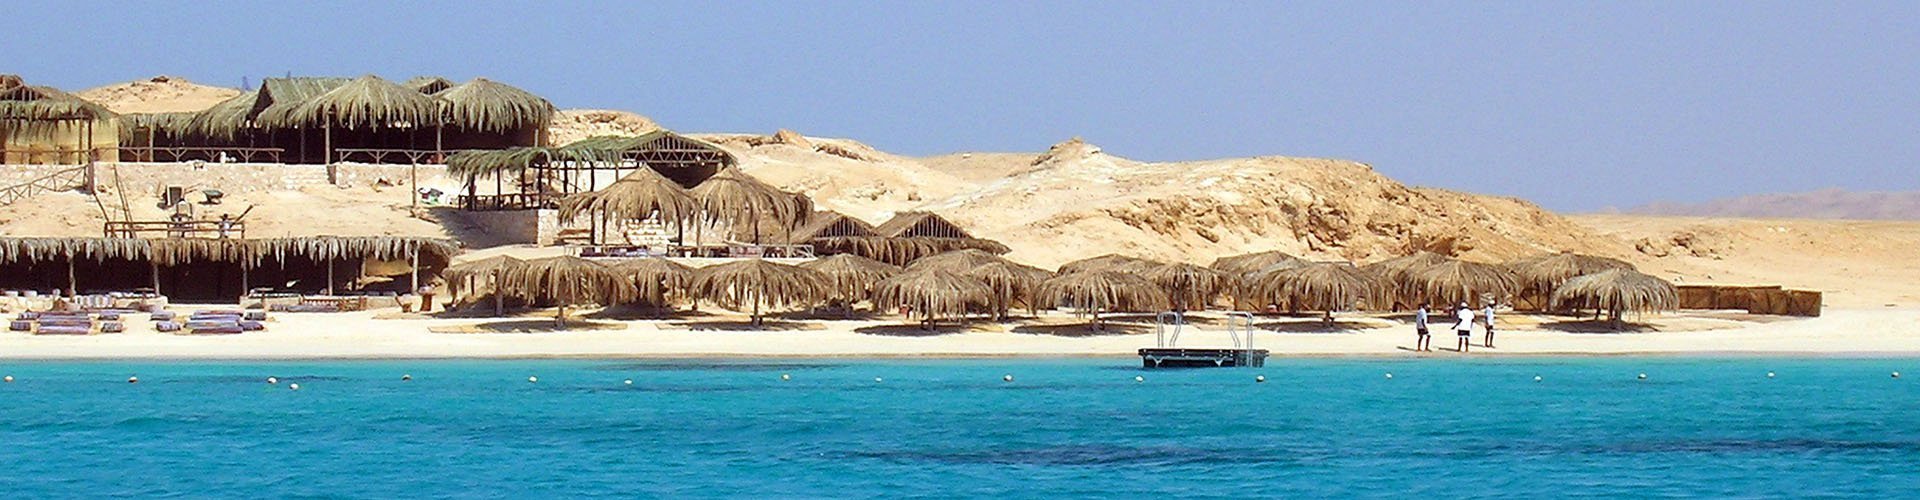 Hurgada, Egipat - AquaTravel.rs